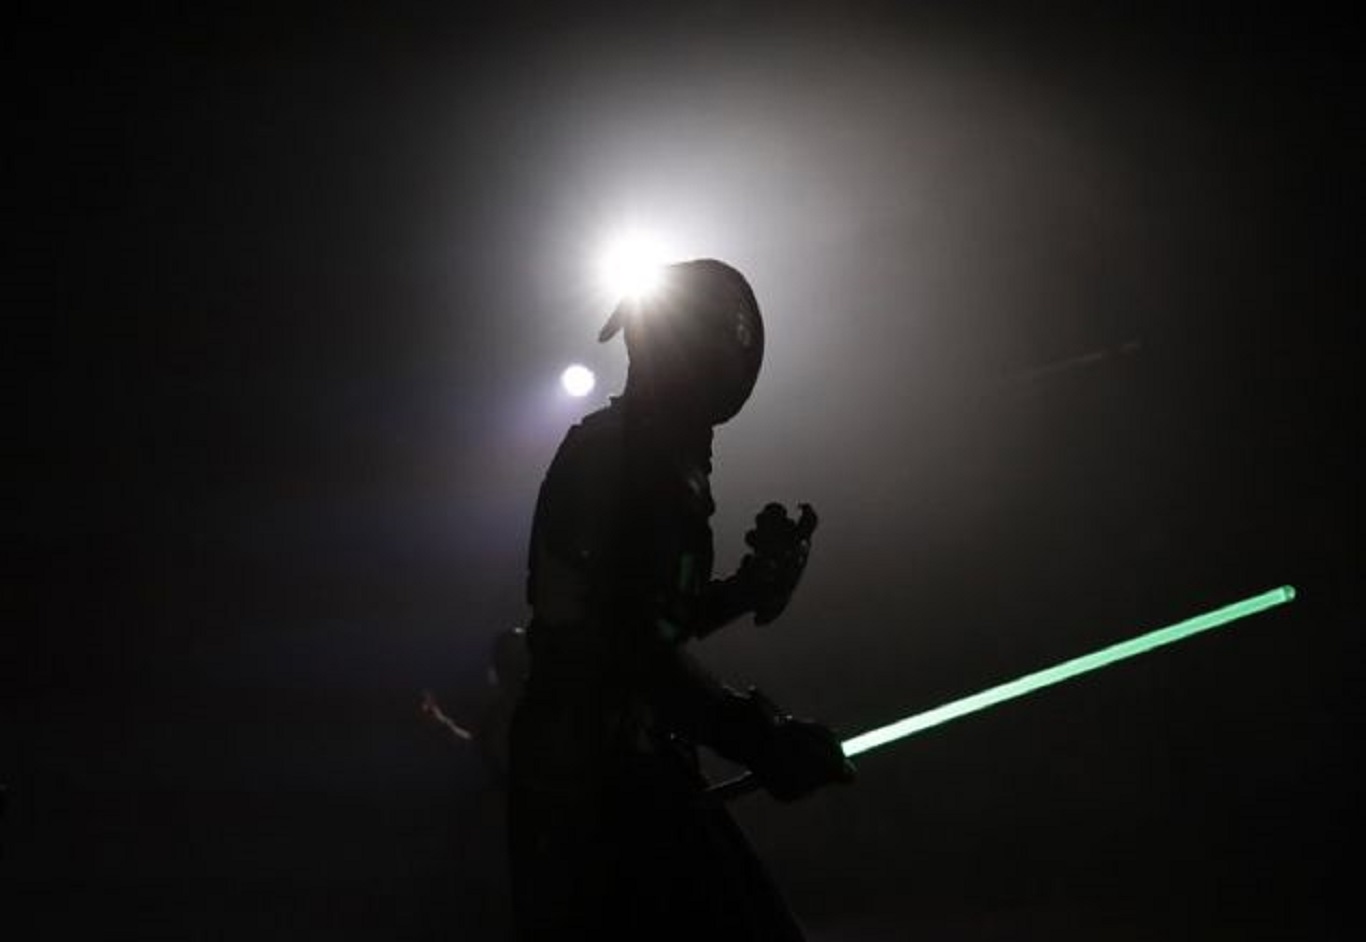 Φανς του Star Wars κρατηθείτε: Η μάχη με φωτόσπαθα έγινε άθλημα! (φωτο-βίντεο)